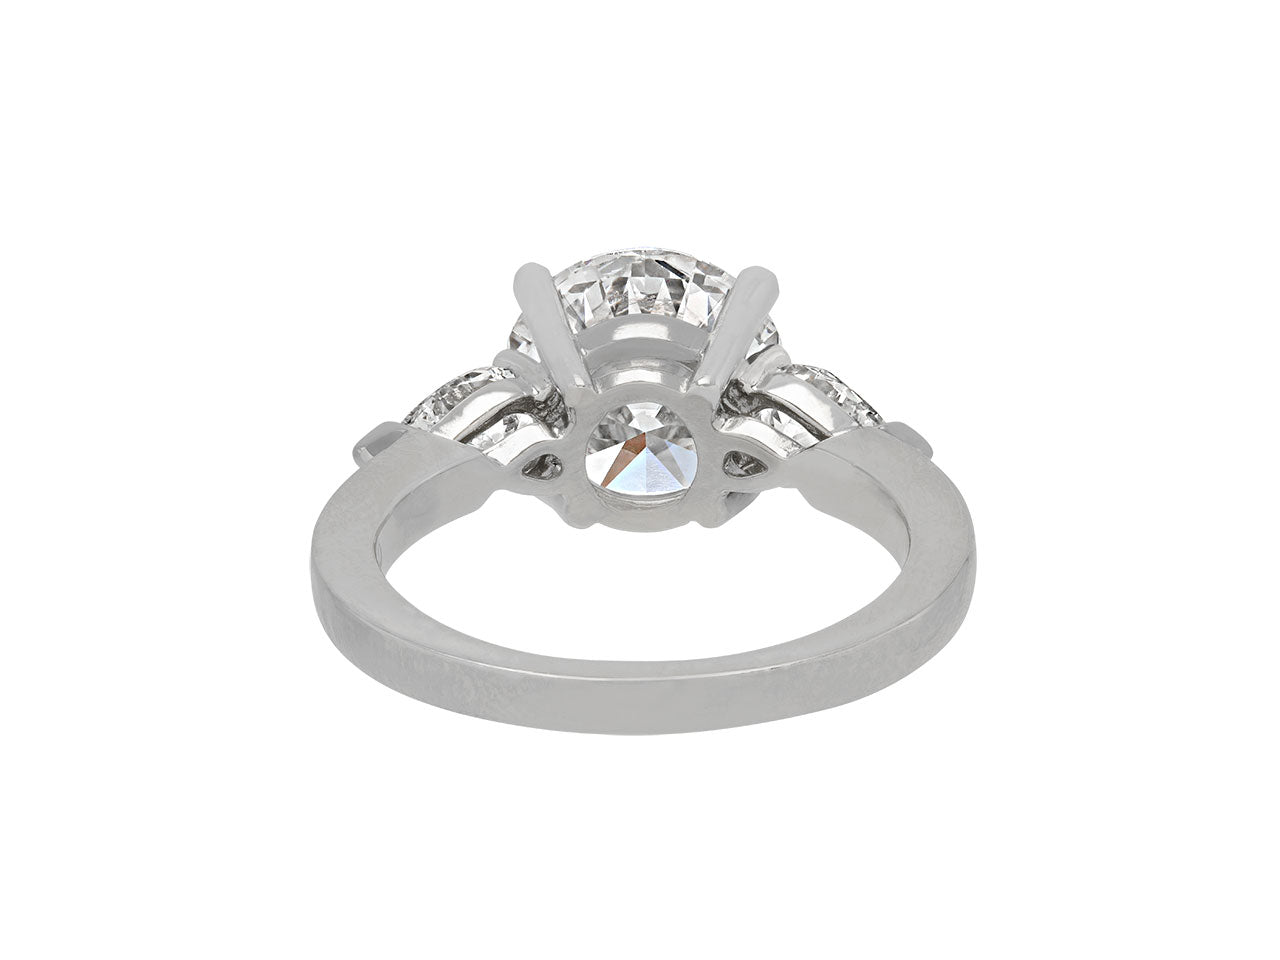 Round Brilliant-Cut Diamond Ring, 3.06 Carat E/VS-2, in Platinum